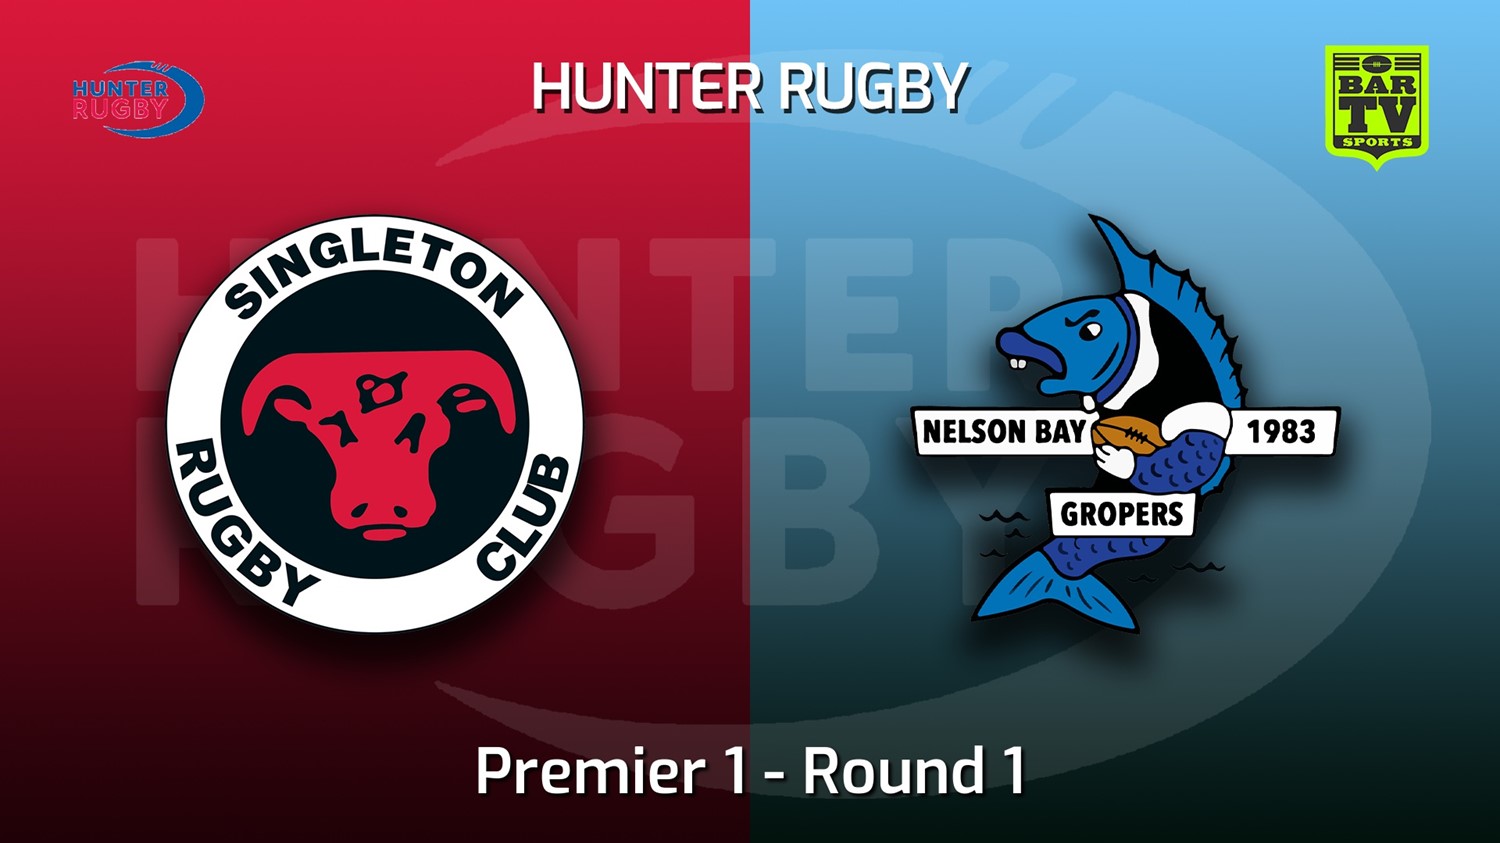 220423-Hunter Rugby Round 1 - Premier 1 - Singleton Bulls v Nelson Bay Gropers Slate Image